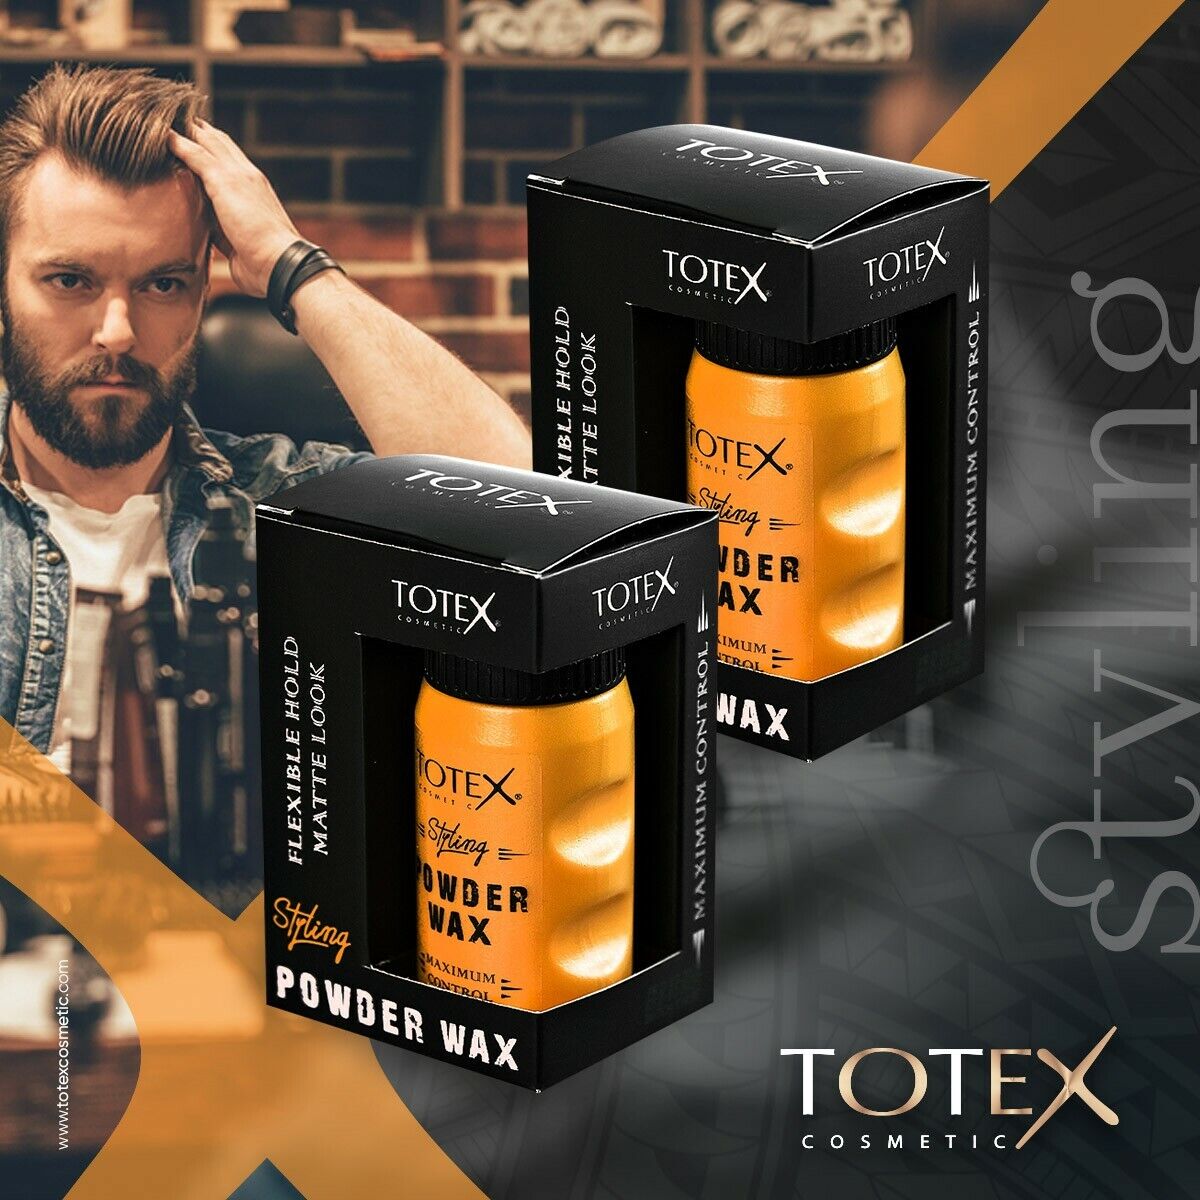 Styling Powder Wax TOTEX Пудра – вакса за обем на косата 20гр.